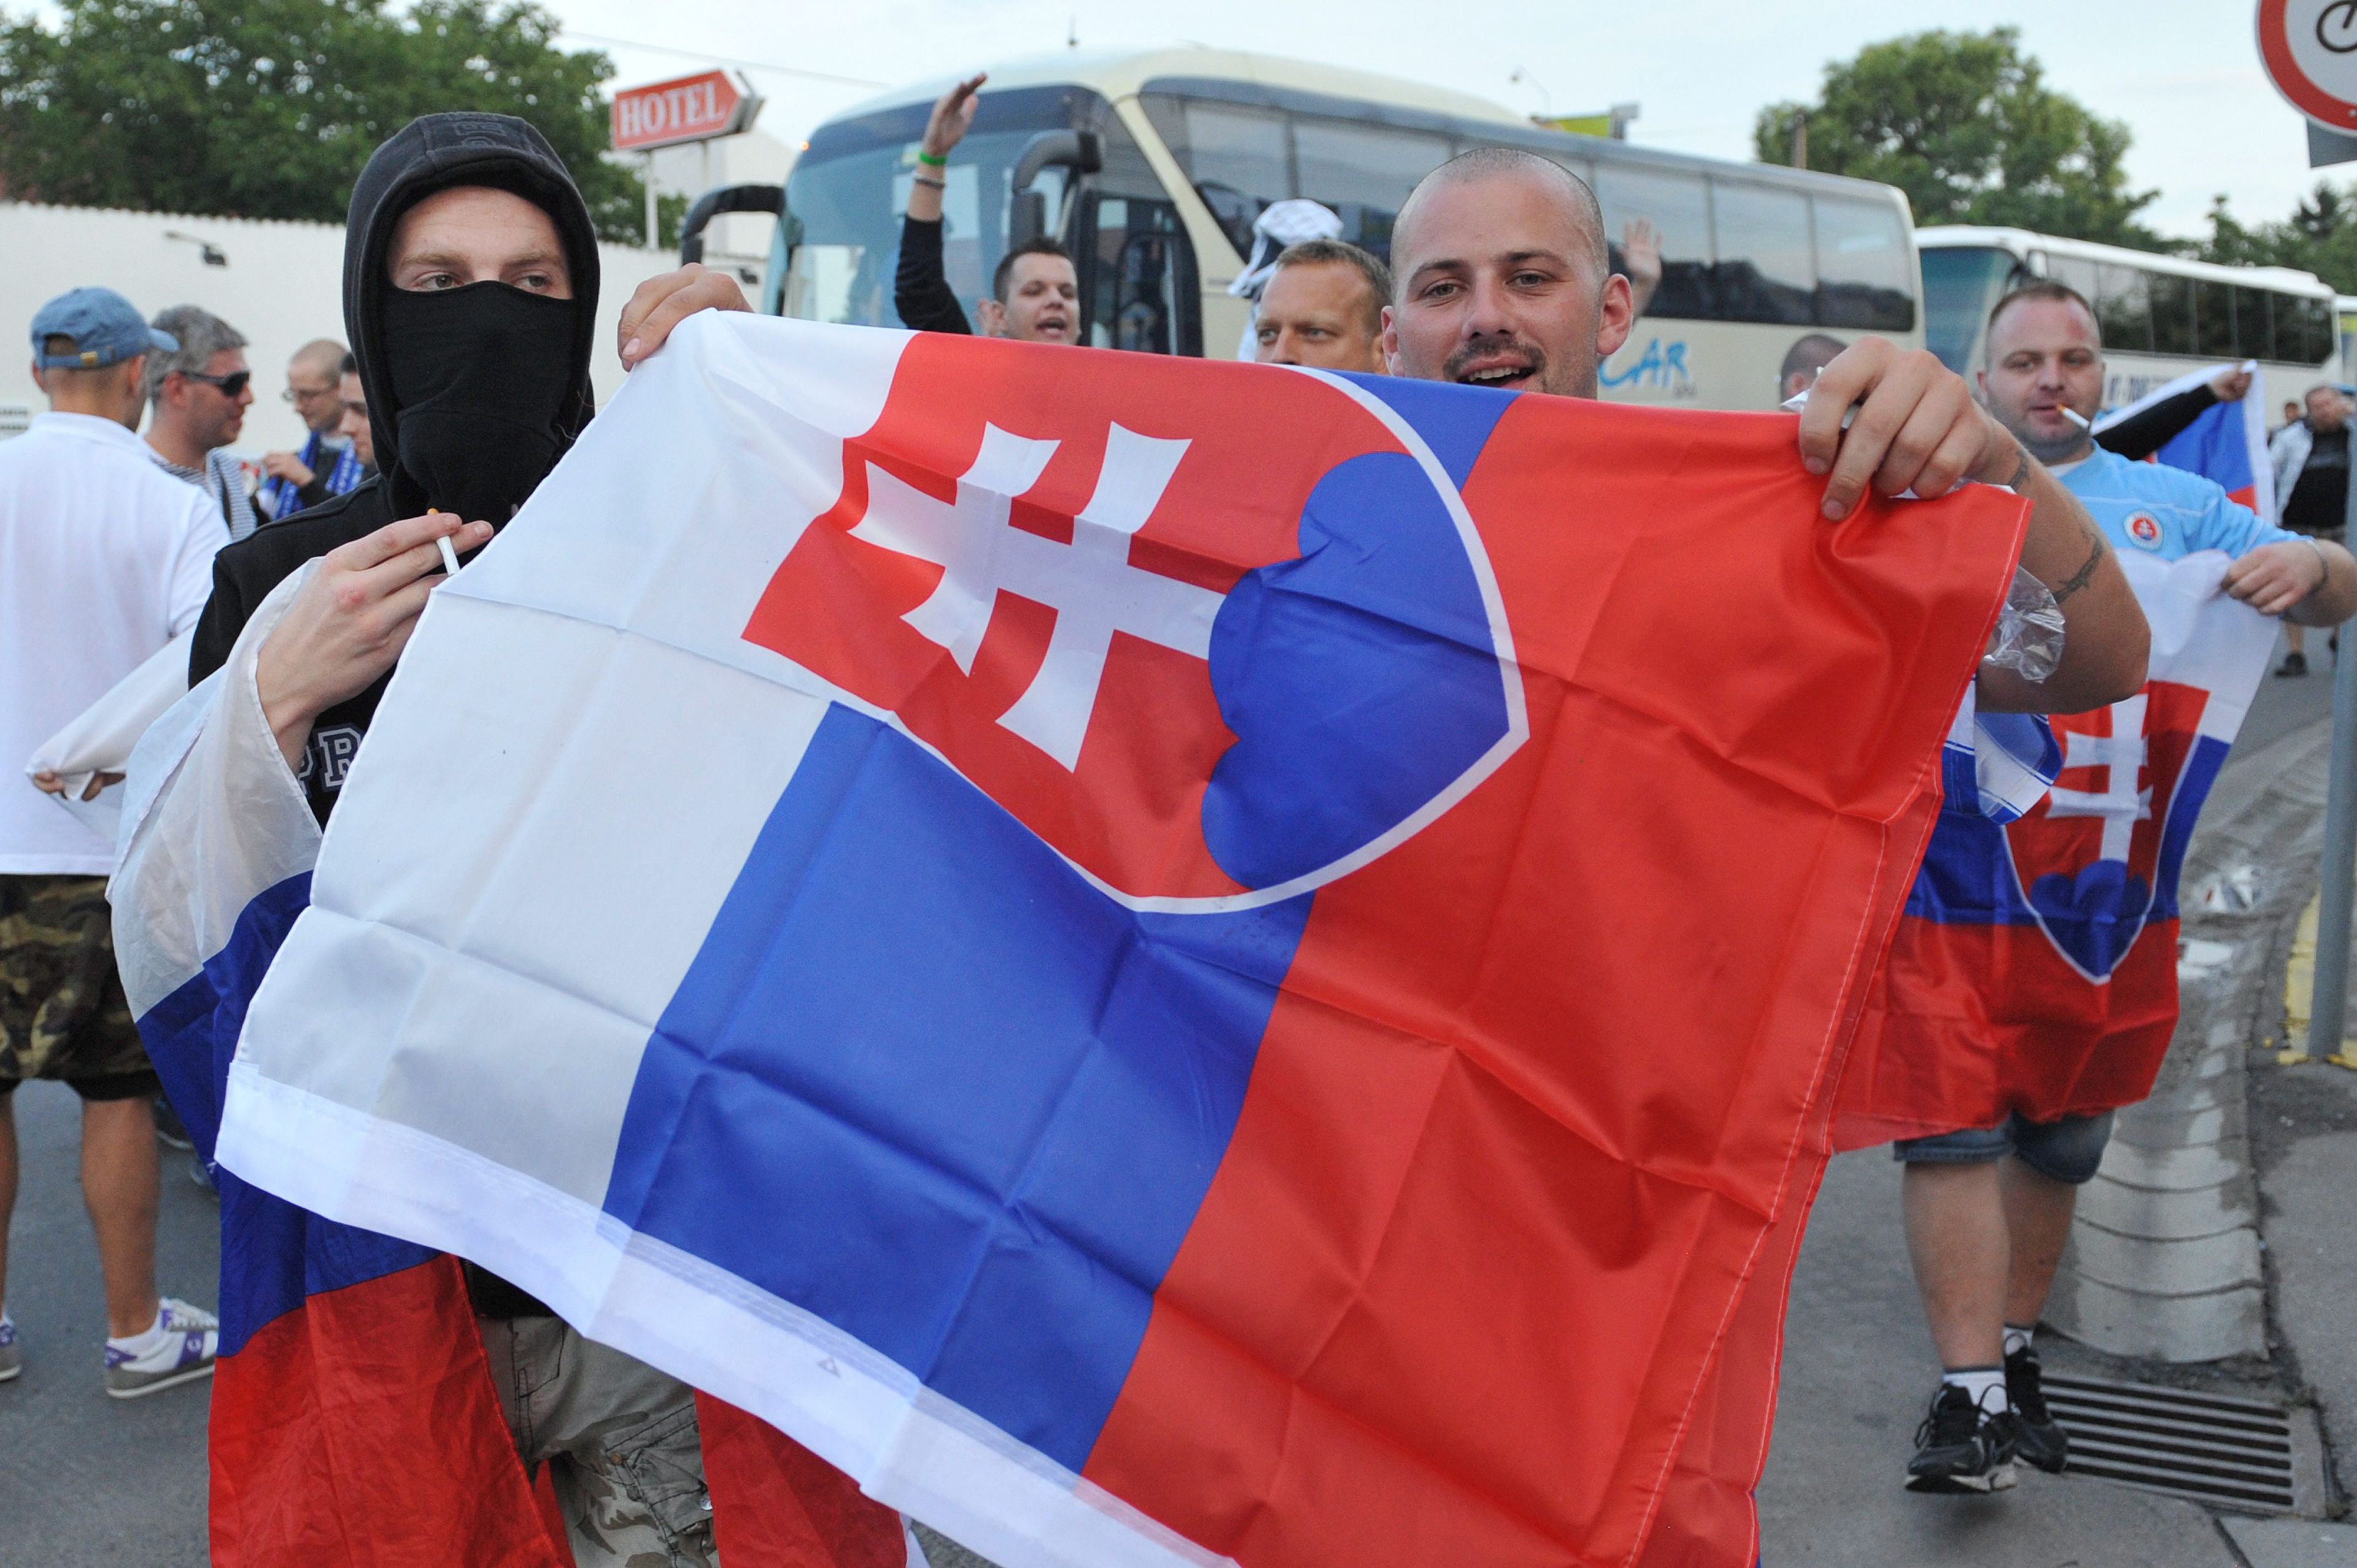 Rárontottak a Slovan Bratislava labdarugóit szállító buszra Budapesten / Fotó: MTI / Koszticsák Szilárd